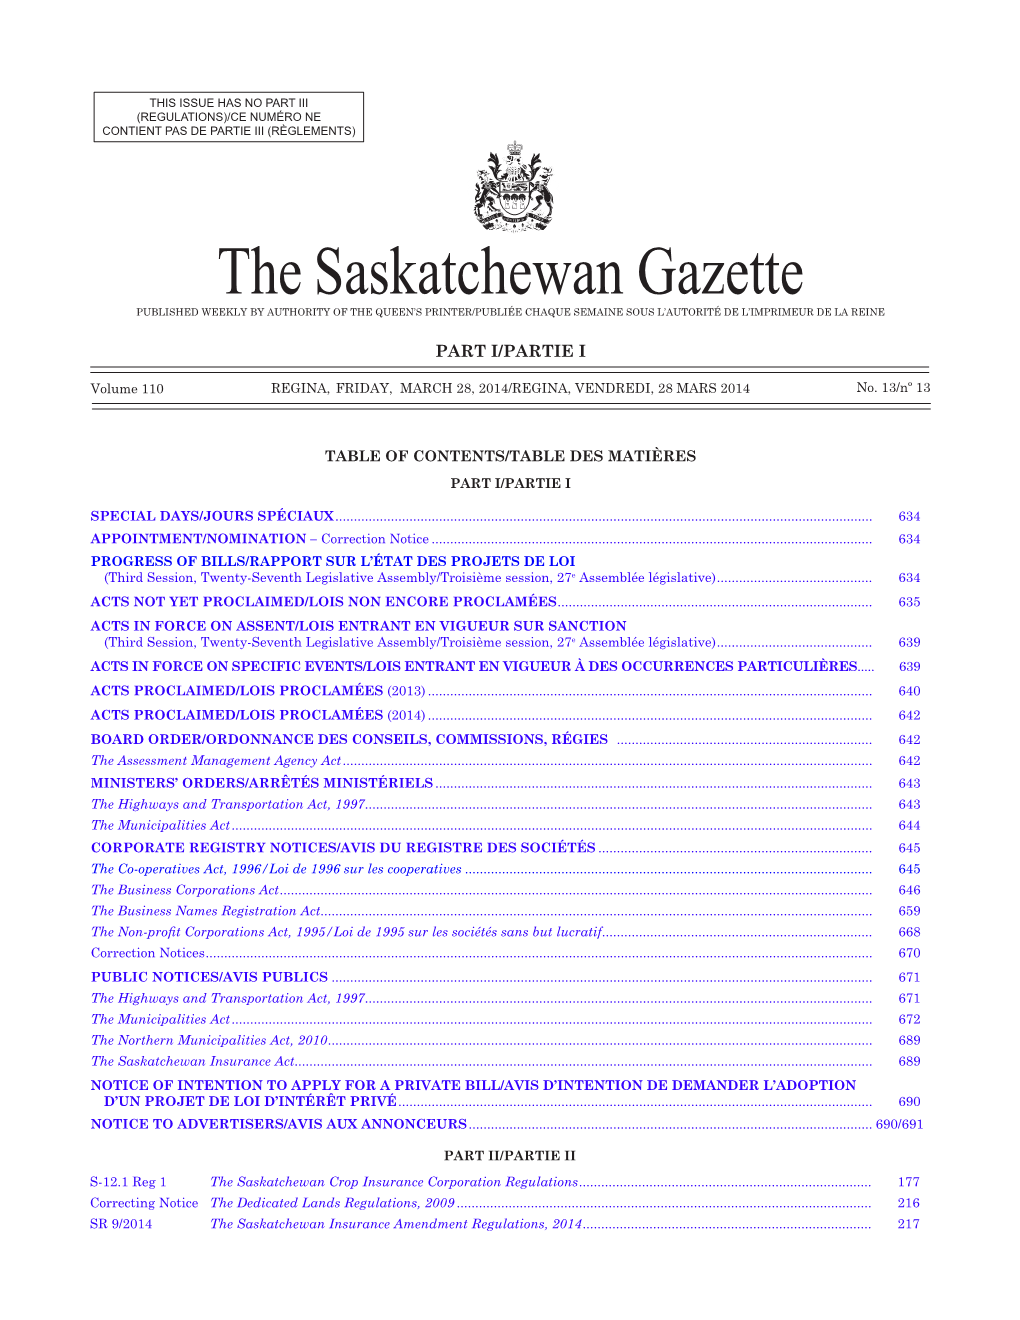 The Saskatchewan Gazette, March 28, 2014 633 (Regulations)/Ce Numéro Ne Contient Pas De Partie Iii (Règlements)